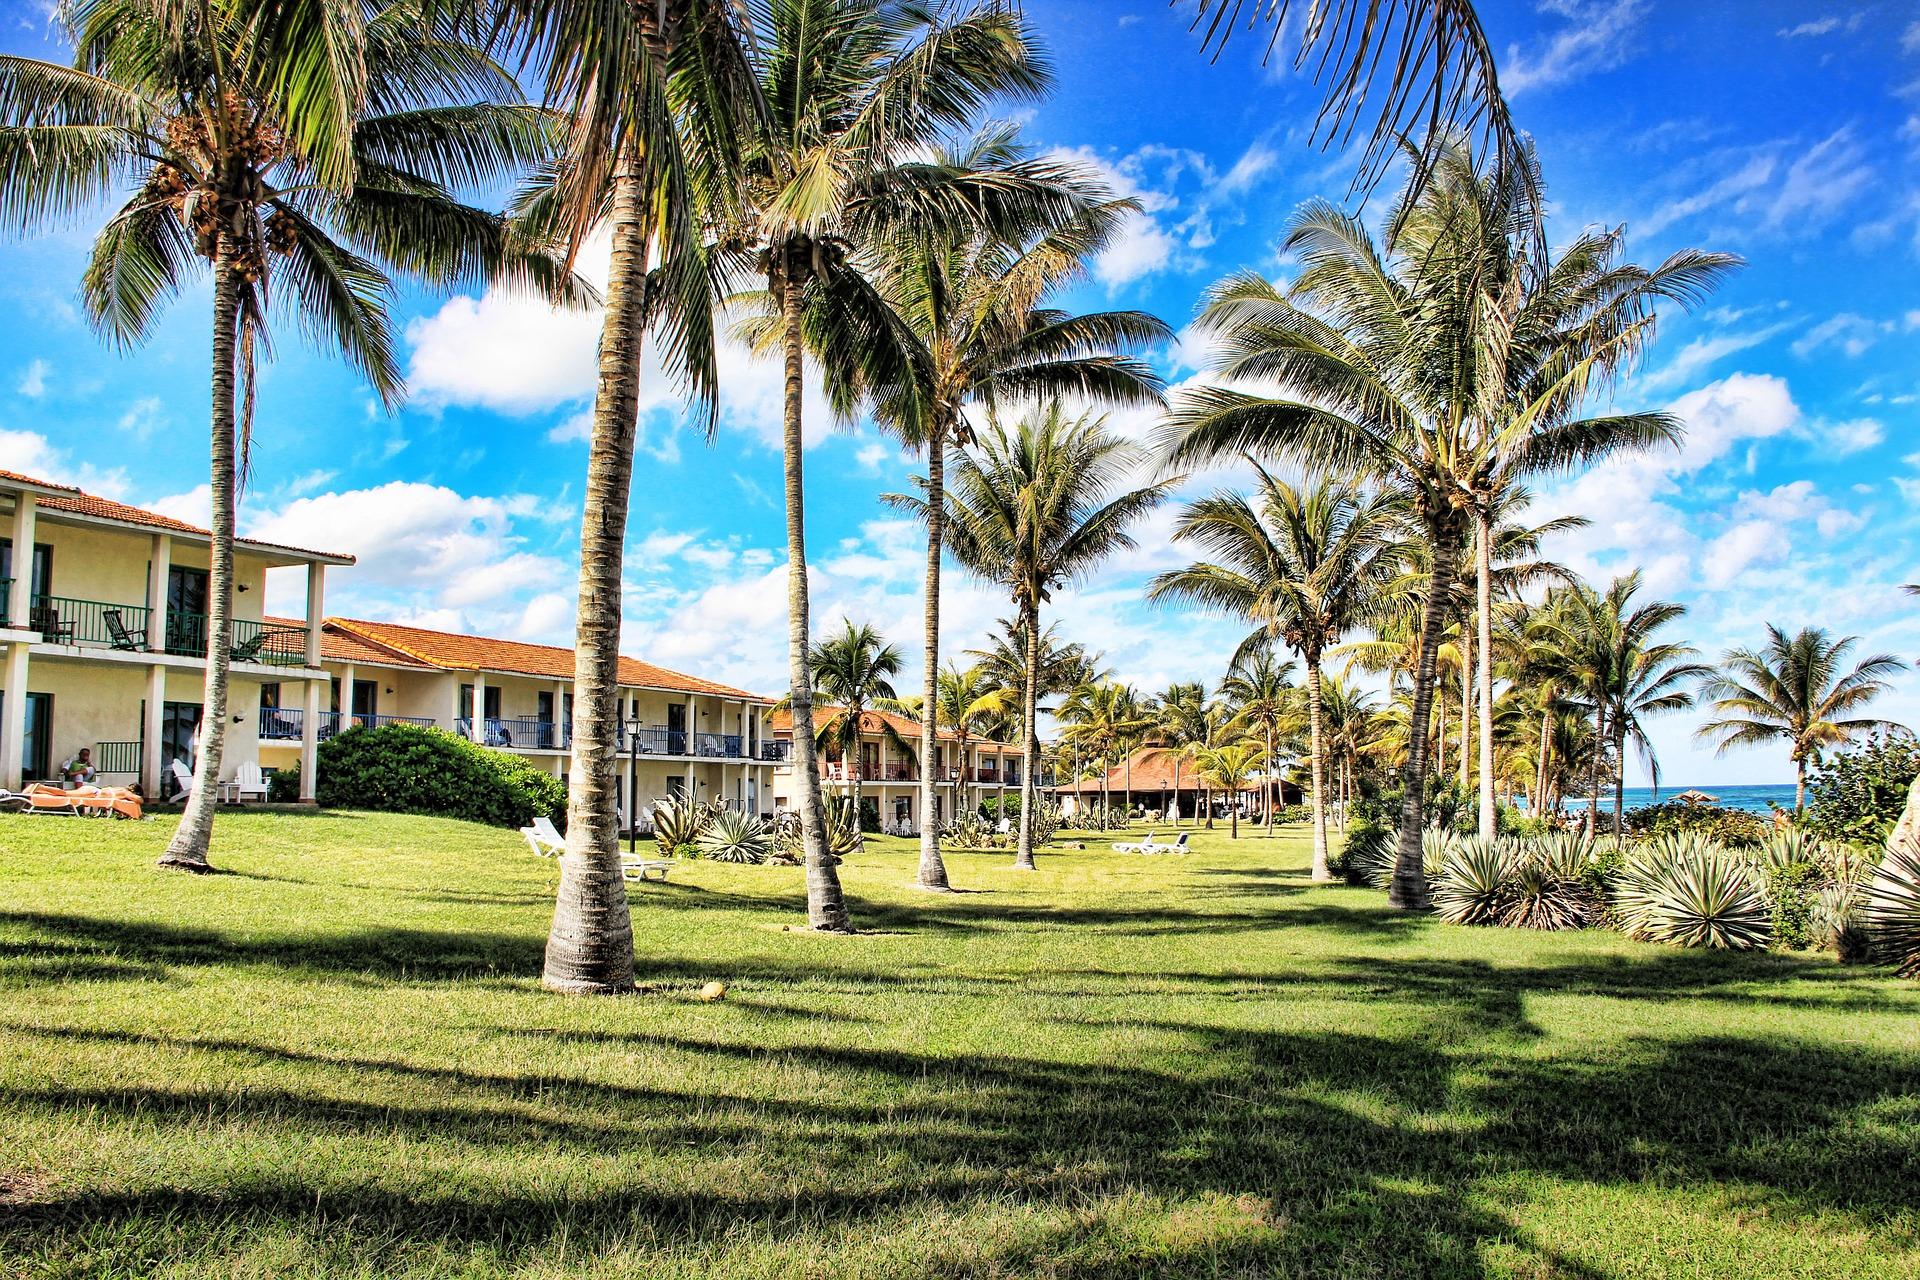 Un resort turístico en Cuba. Pixabay